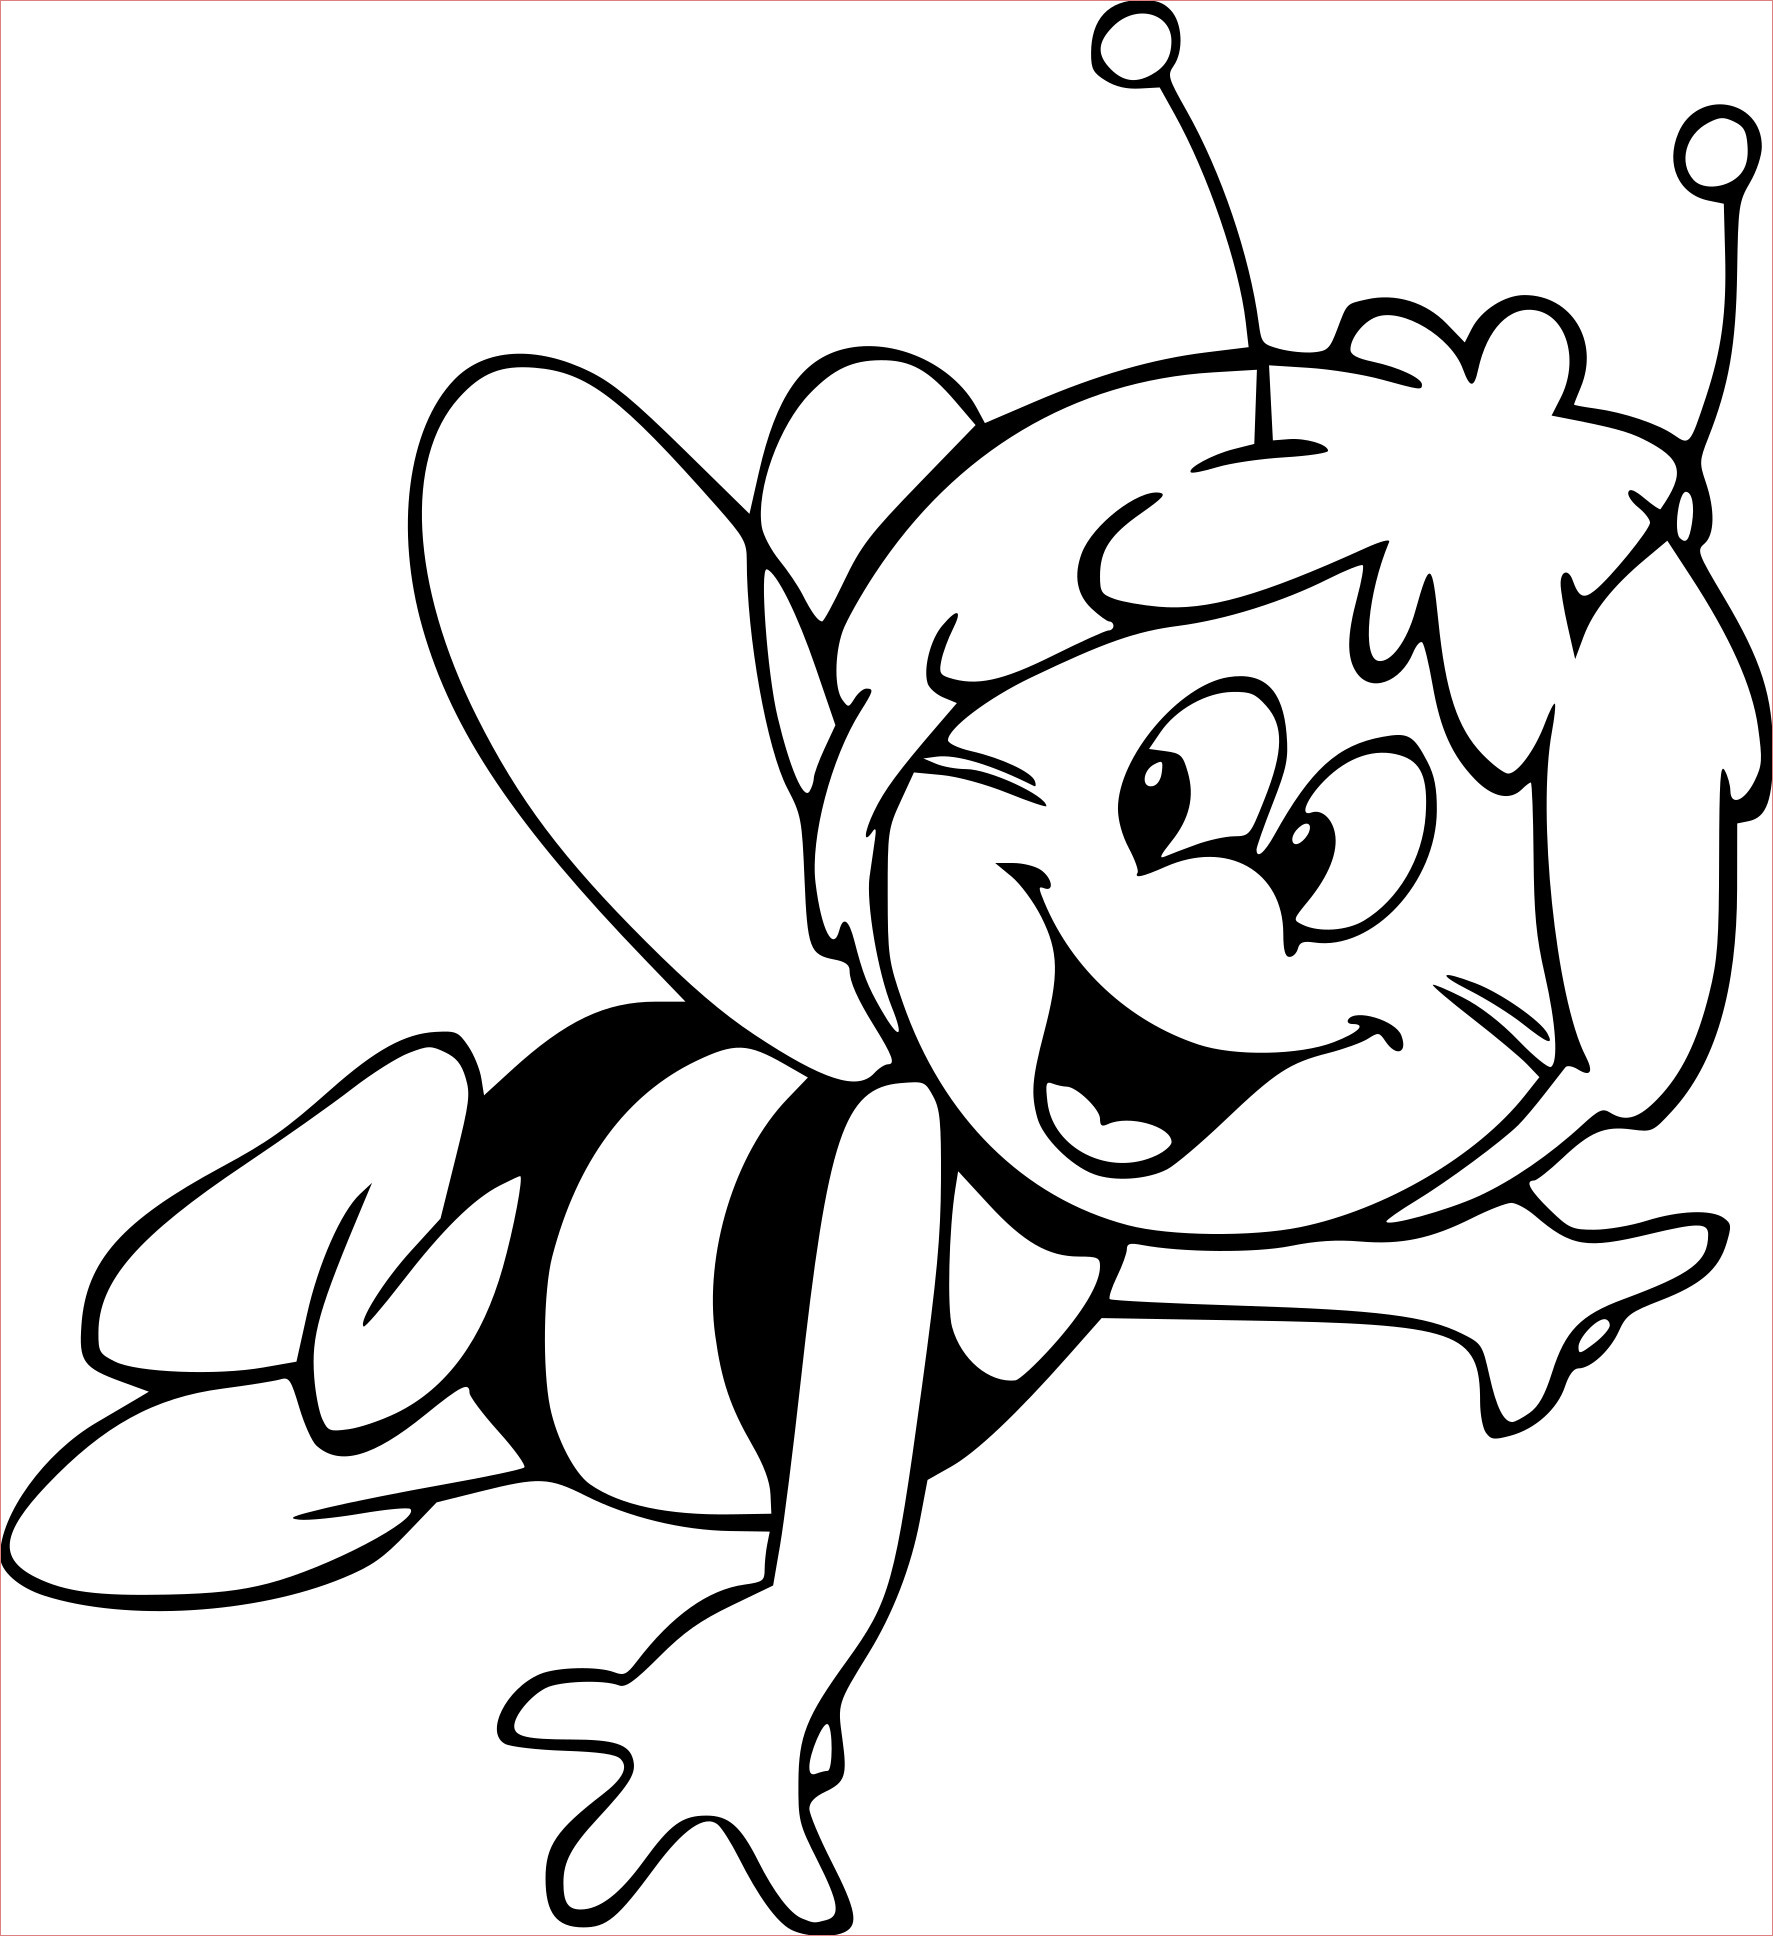 Пчелка раскраска распечатать. Пчелка раскраска. Пчелка раскраска для малышей. Пчела раскраска. Раскраска пчёлка для детей.